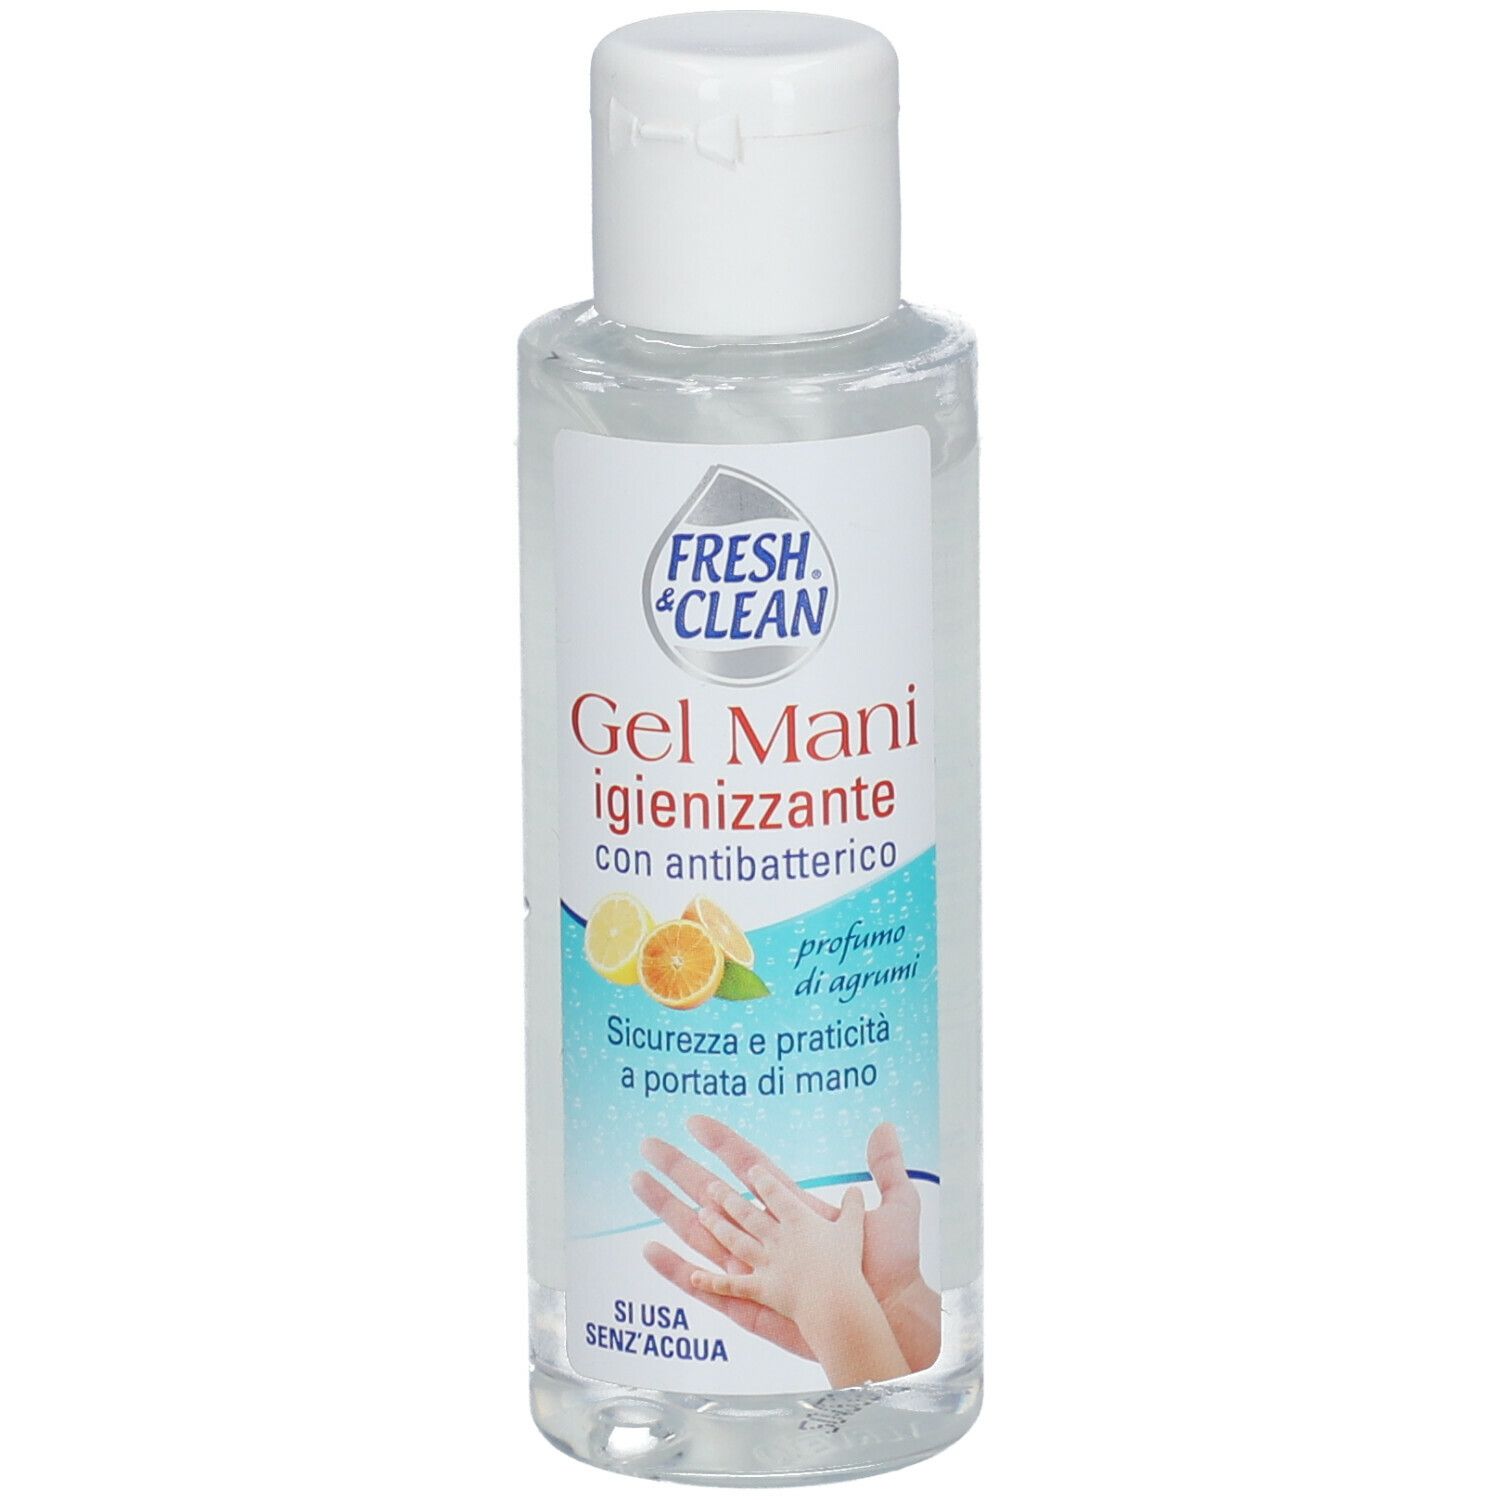 FRESH & CLEAN Gel Mani Igienizzante 100 ml